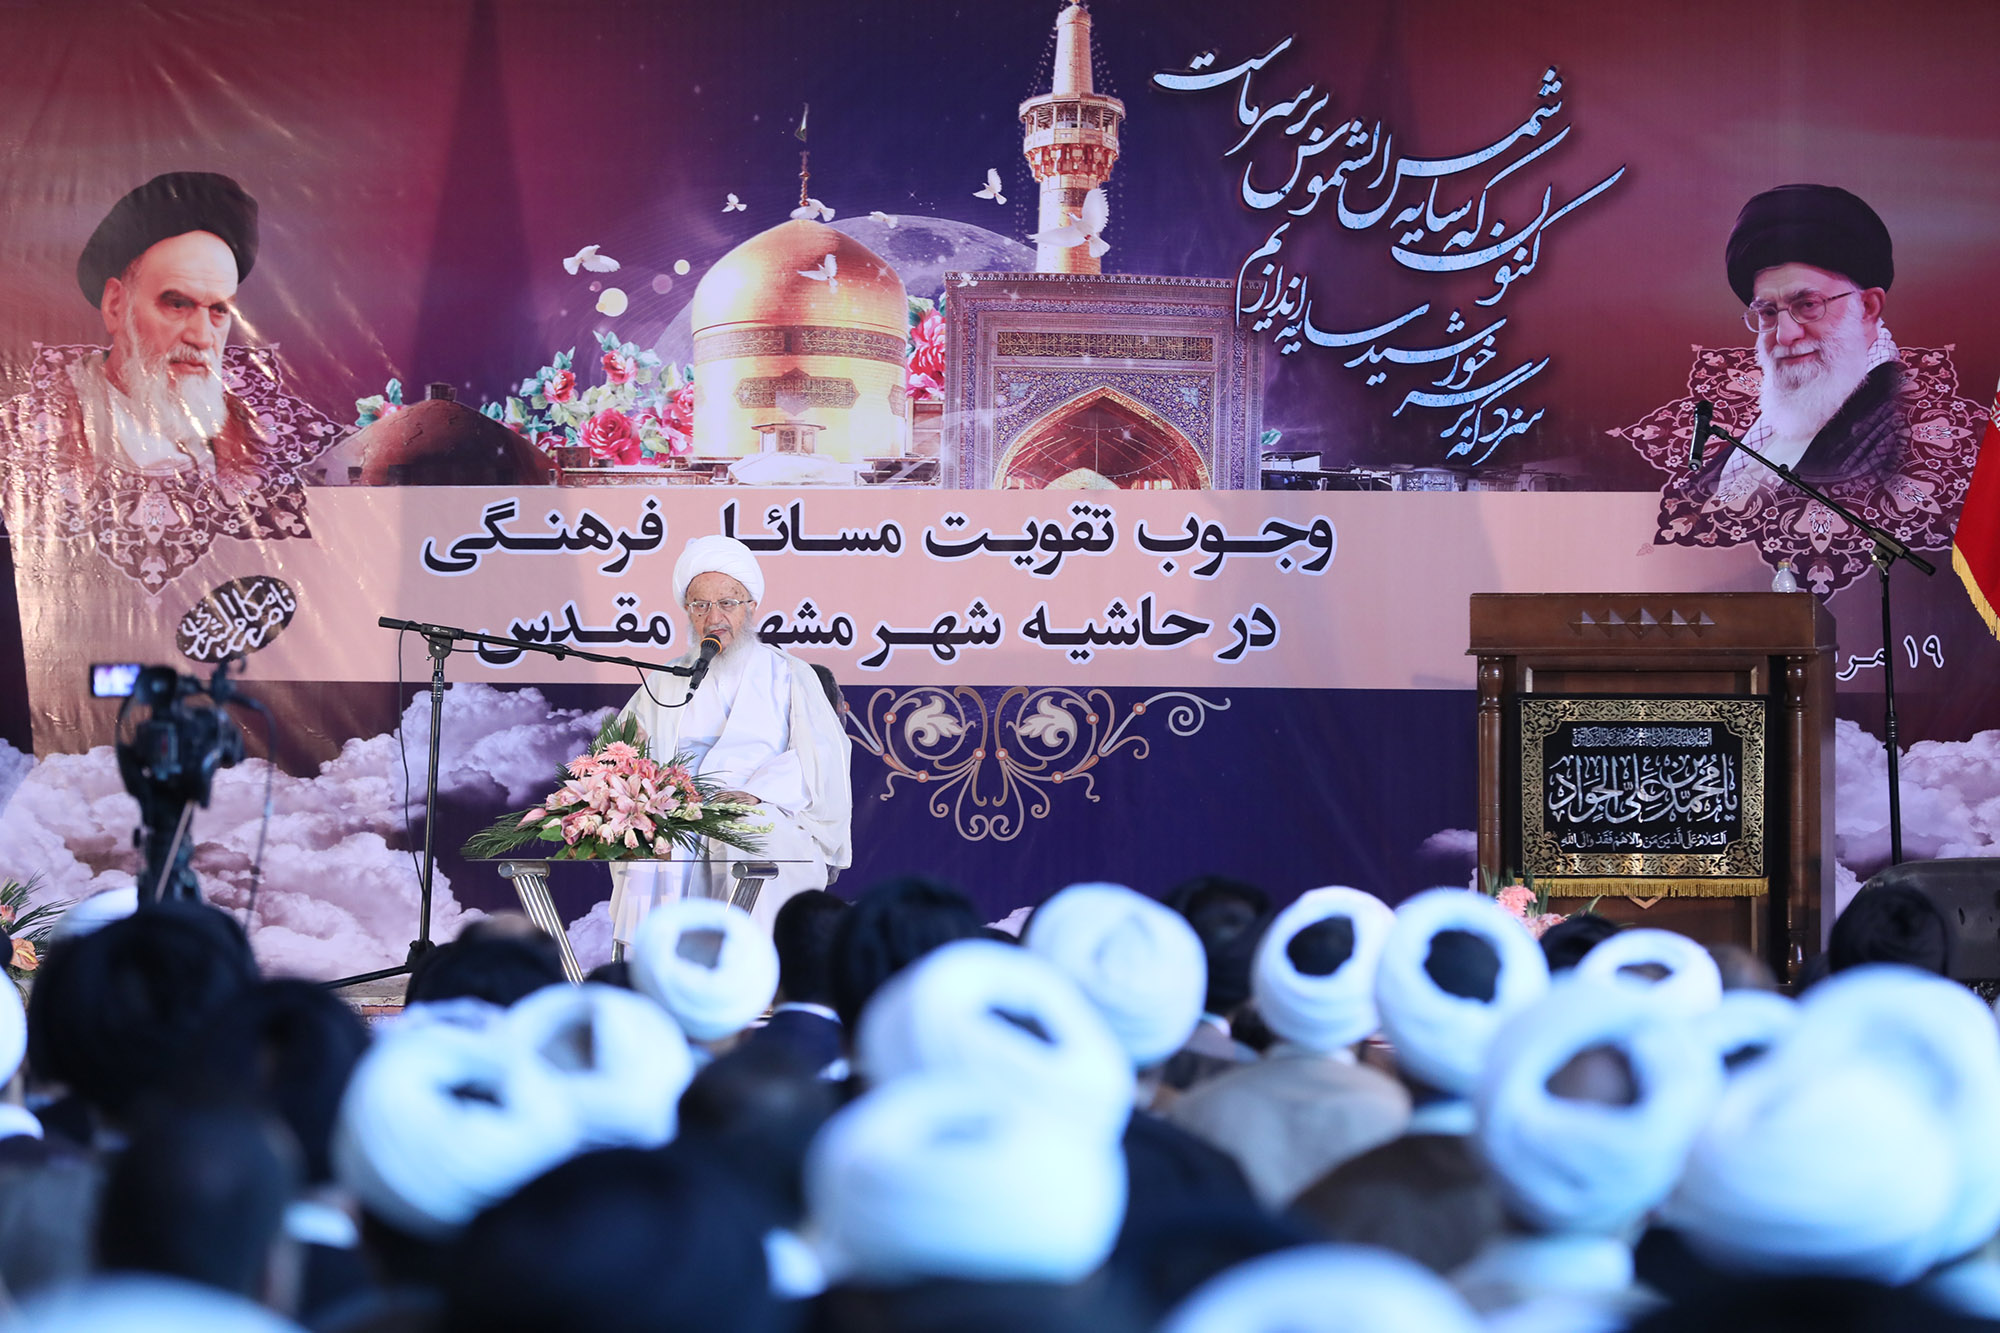 همایش وجوب تقویت مسائل فرهنگی در حاشیه شهر مشهد مقدس